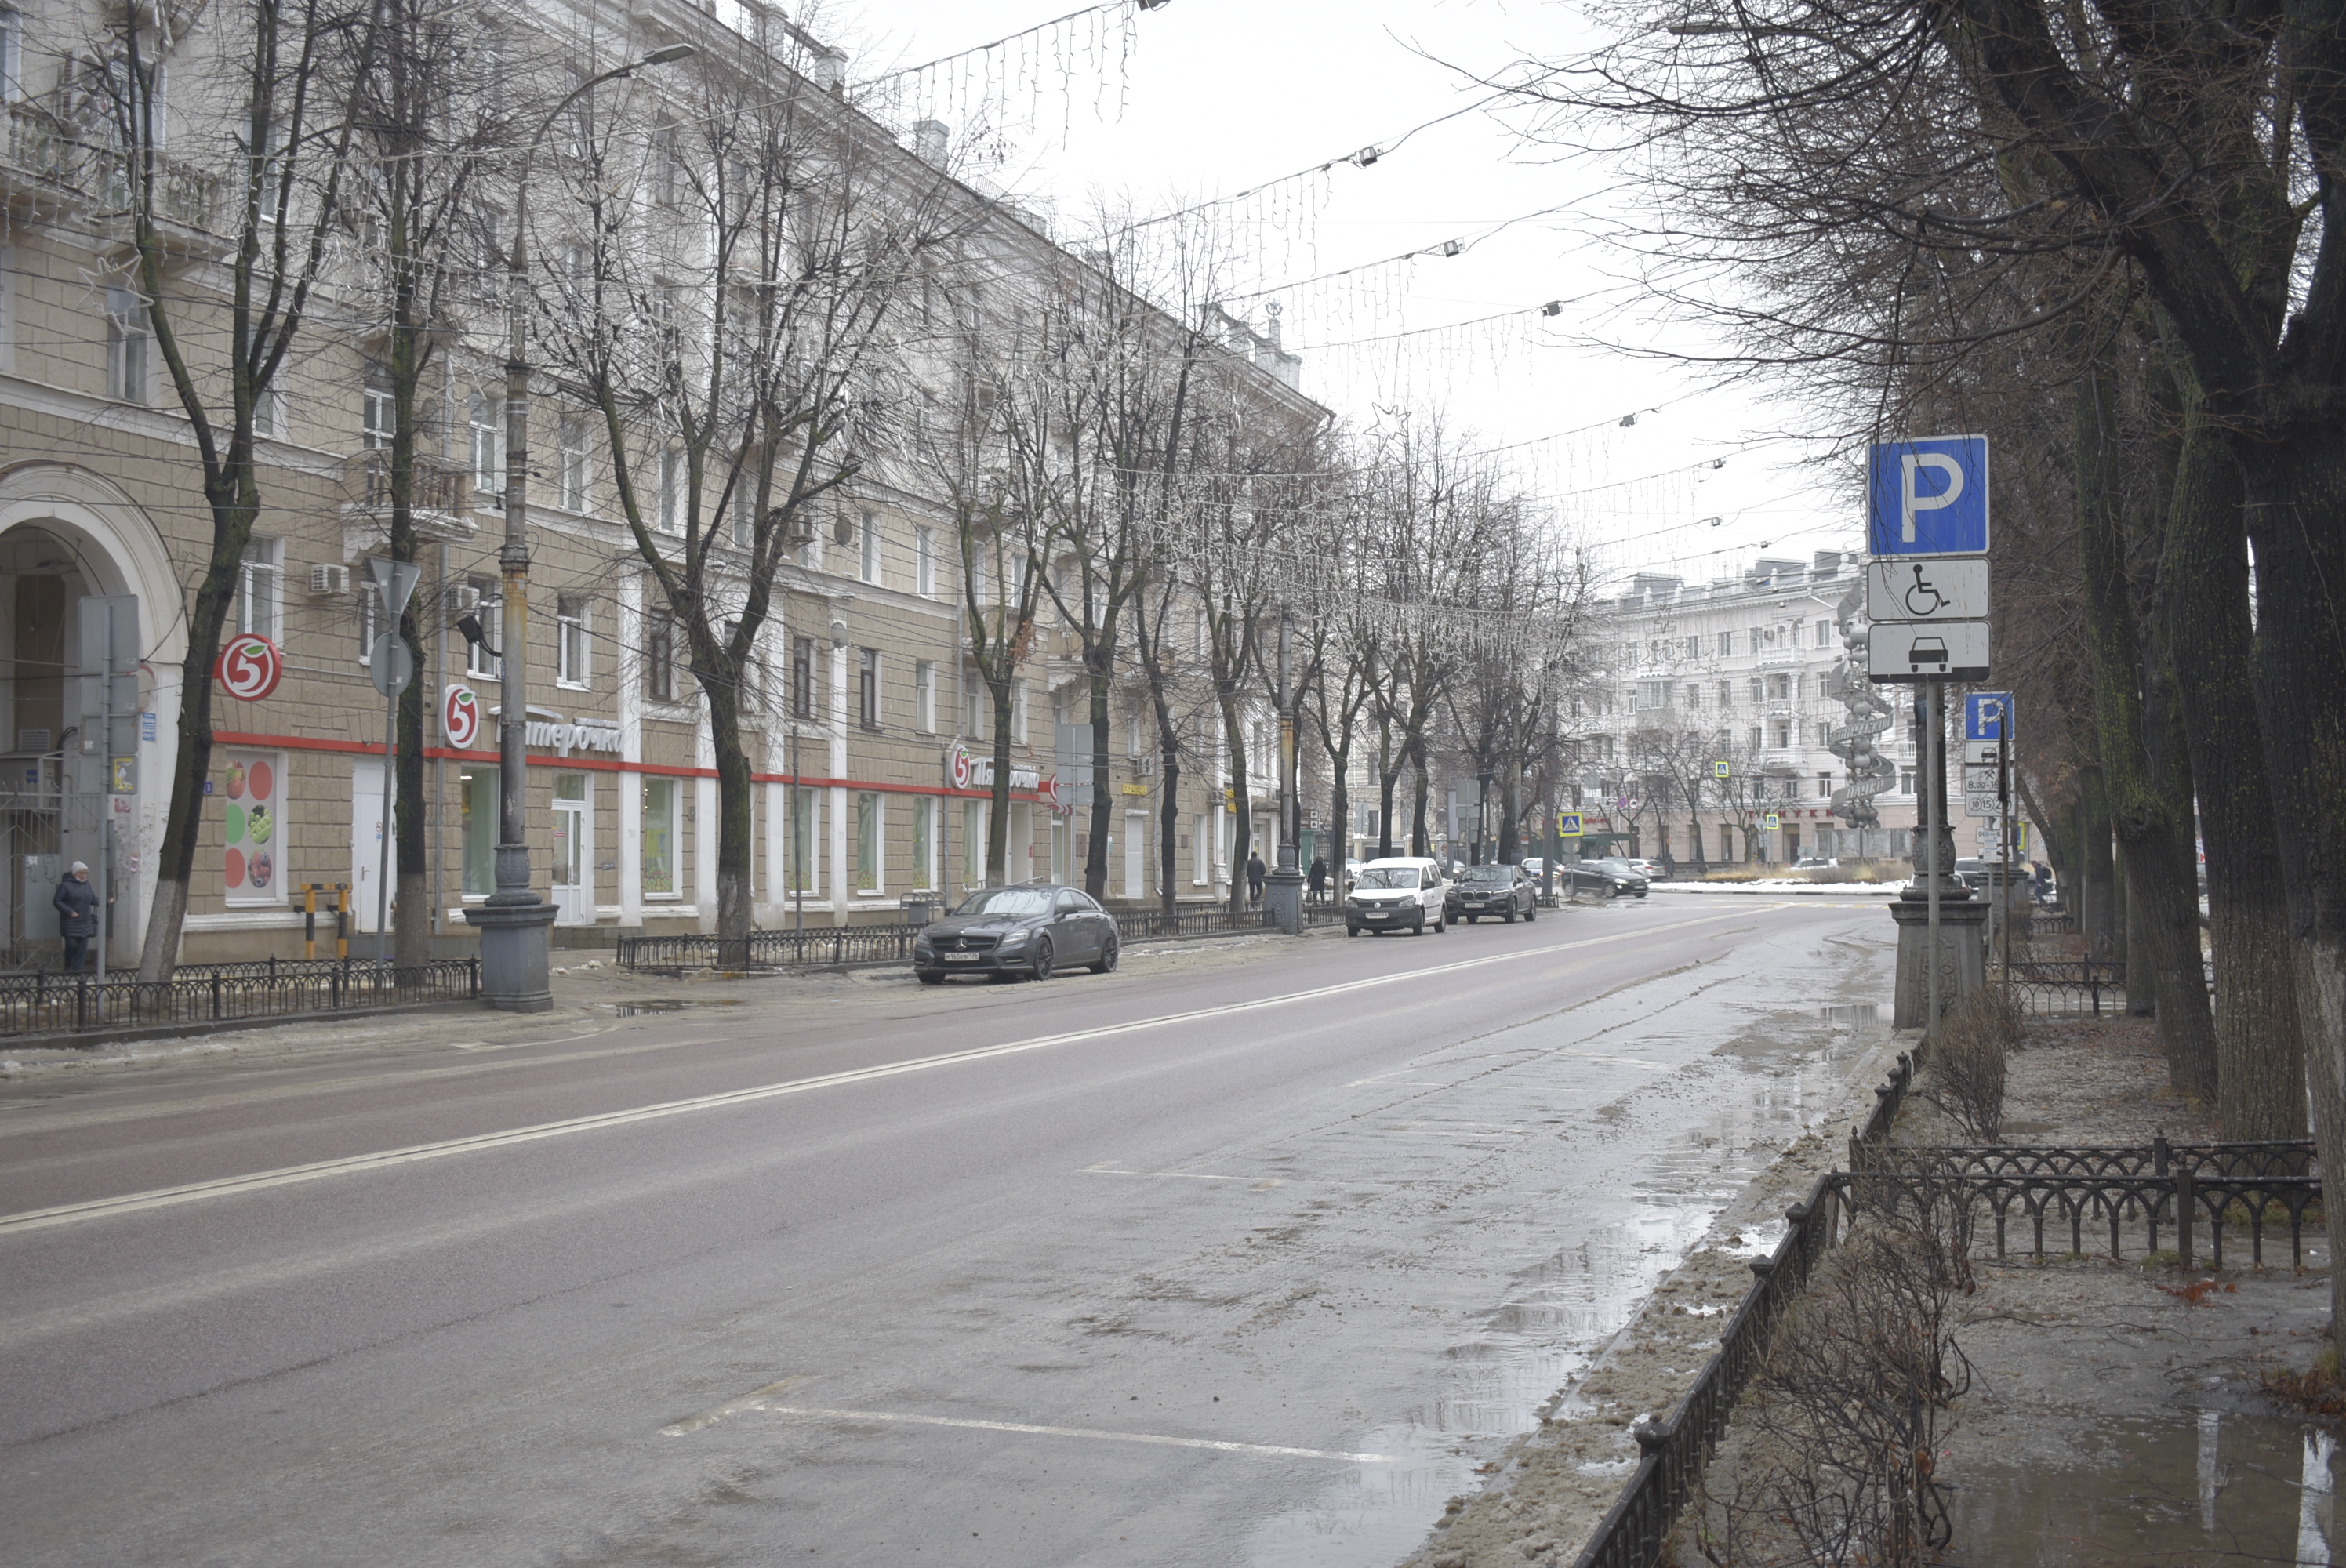 Какими методами можно решить проблему с парковками в Воронеже? - фото 6